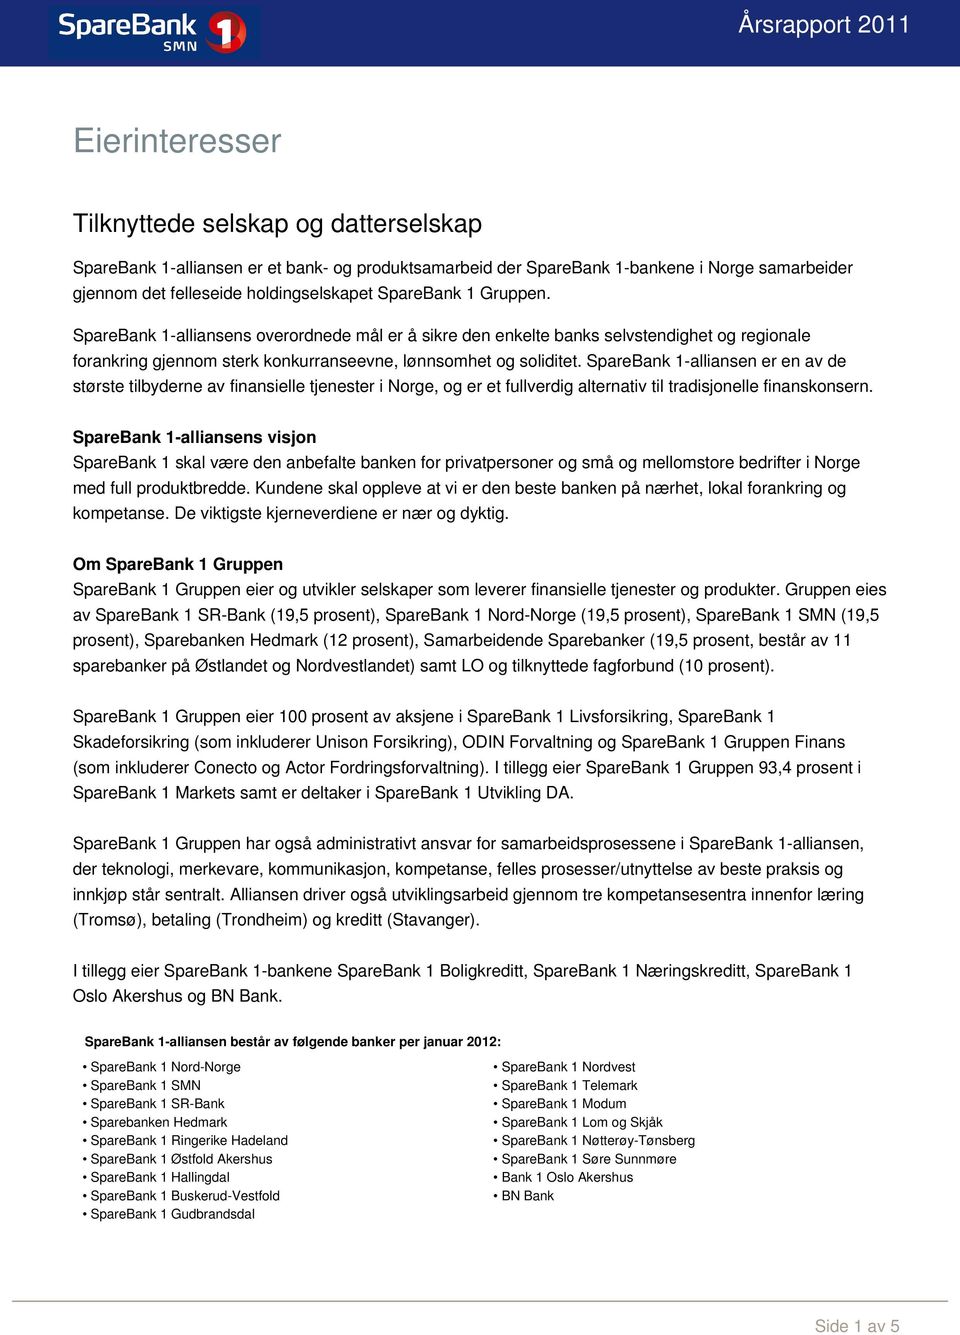 SpareBank 1-alliansen er en av de største tilbyderne av finansielle tjenester i Norge, og er et fullverdig alternativ til tradisjonelle finanskonsern.